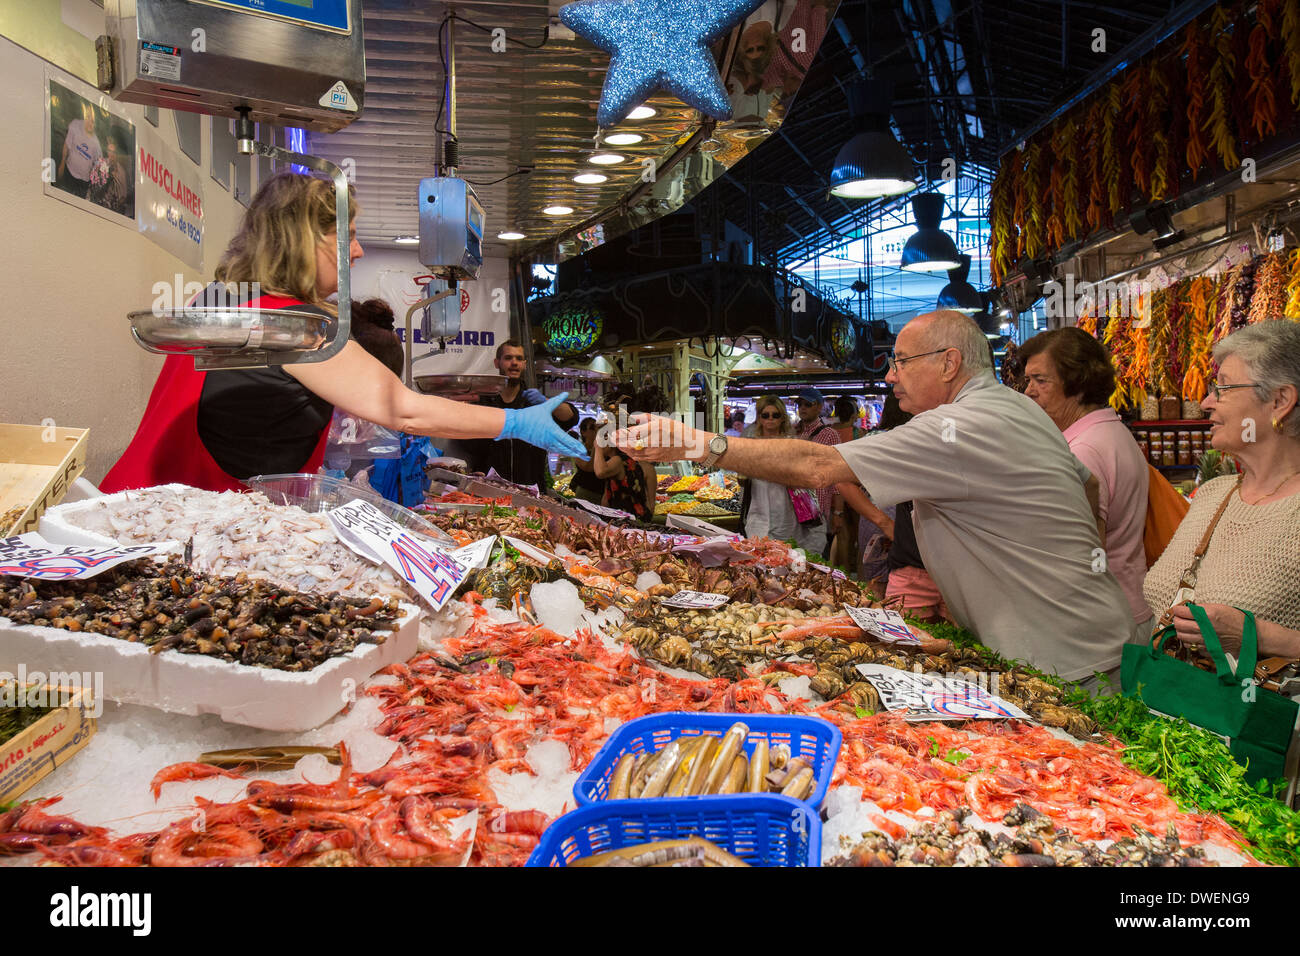 Le célèbre marché alimentaire Saint Joseph - l'Eixample de Barcelone - Catalogne Région de l'Espagne Banque D'Images